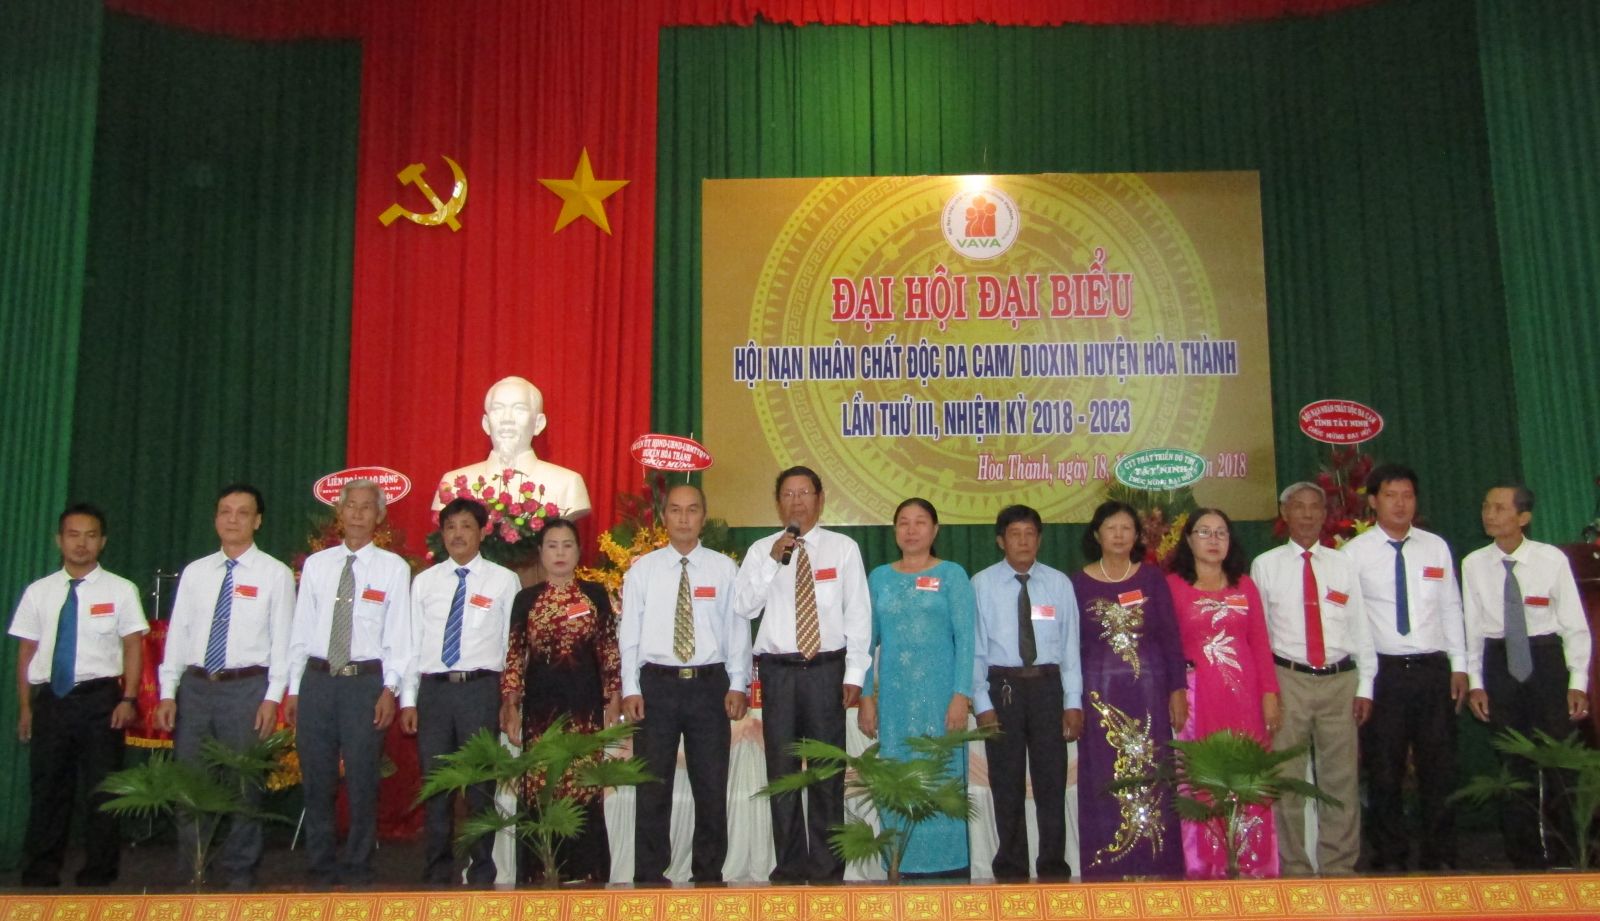 Điểm báo in Tây Ninh ngày 20.7.2018